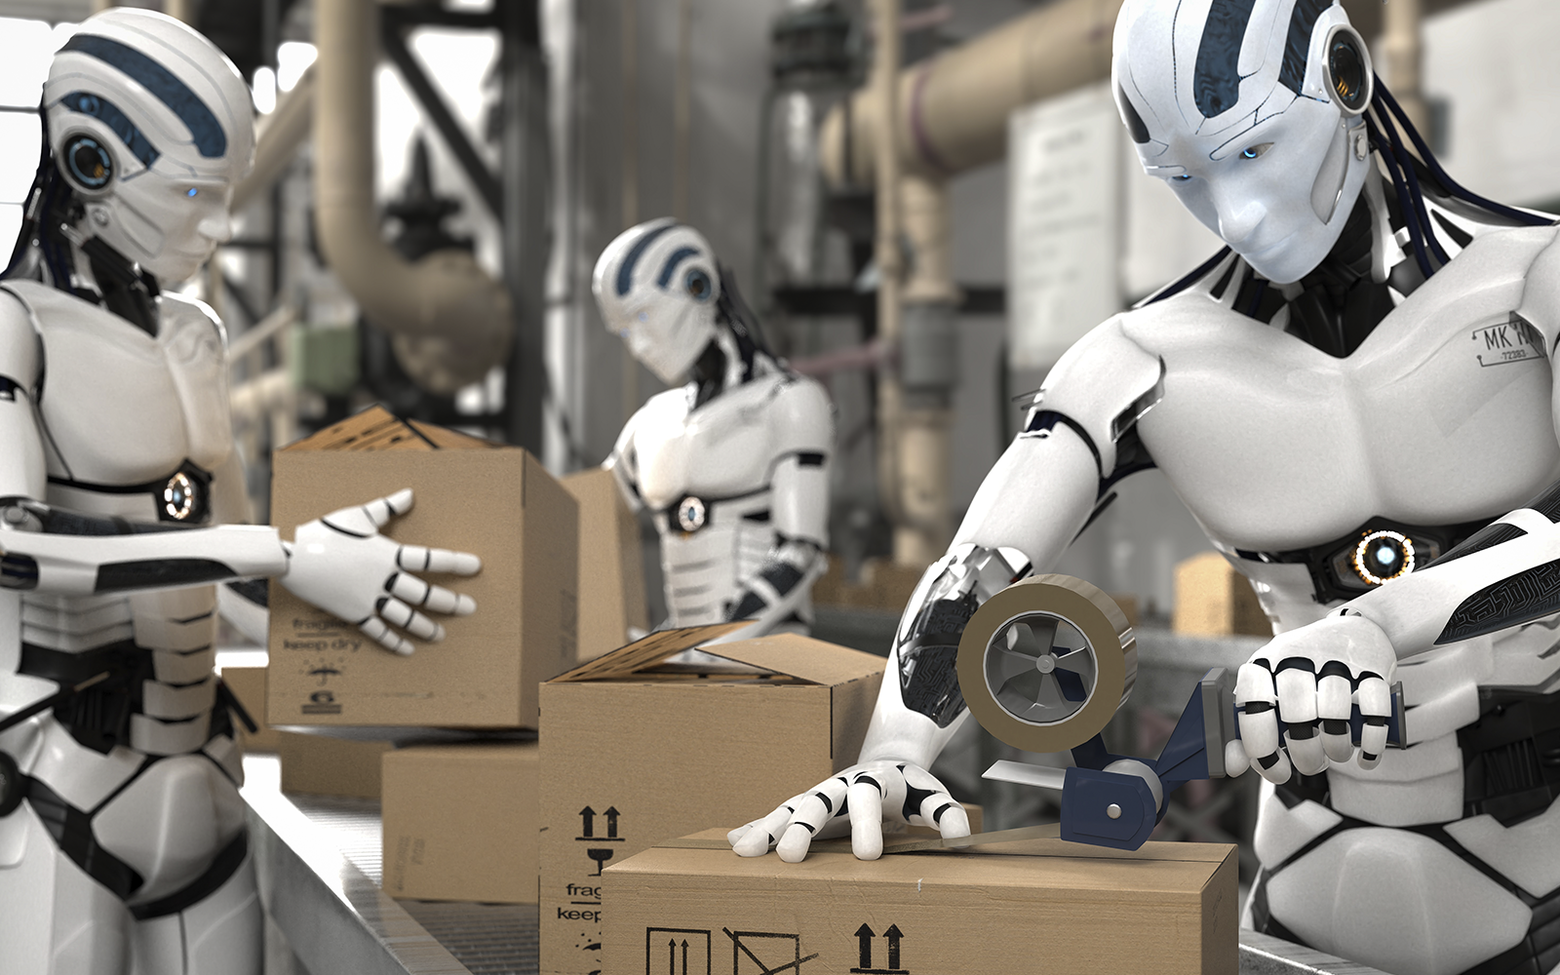 Сколько роботов в команде. Массовое производство роботов. Боевой человекоподобный робот. Роботы вместо людей. Семья роботов.